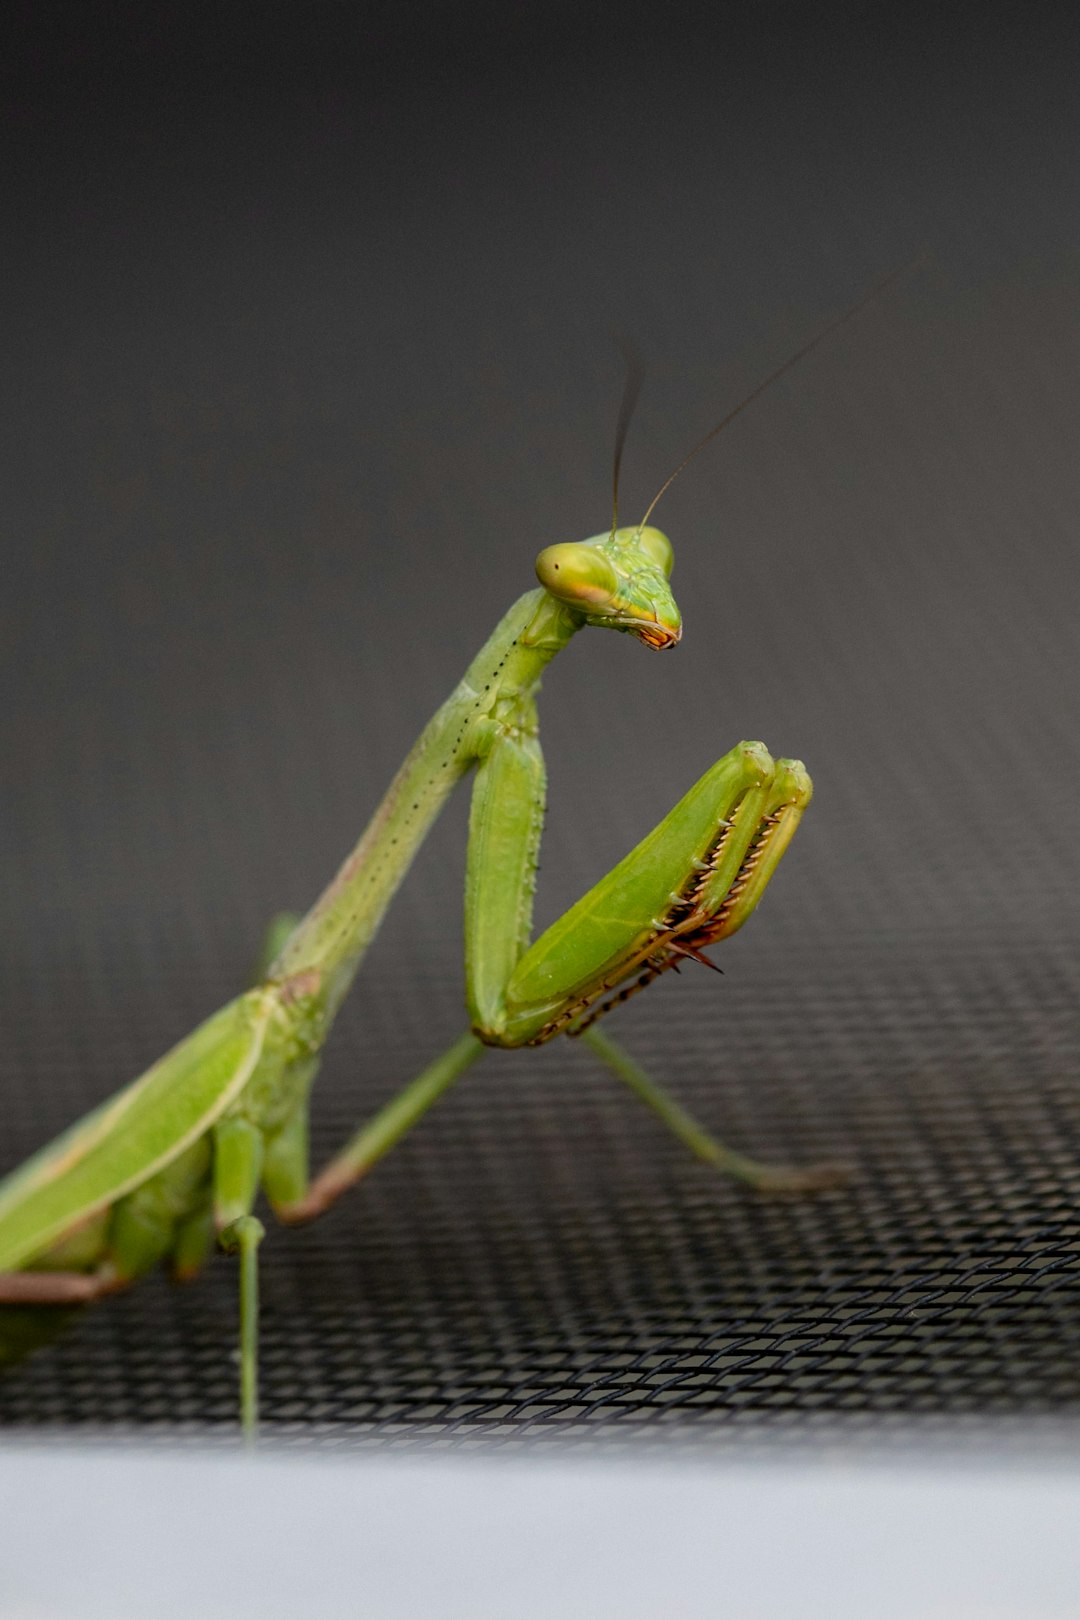 green praying mantis on grey textile